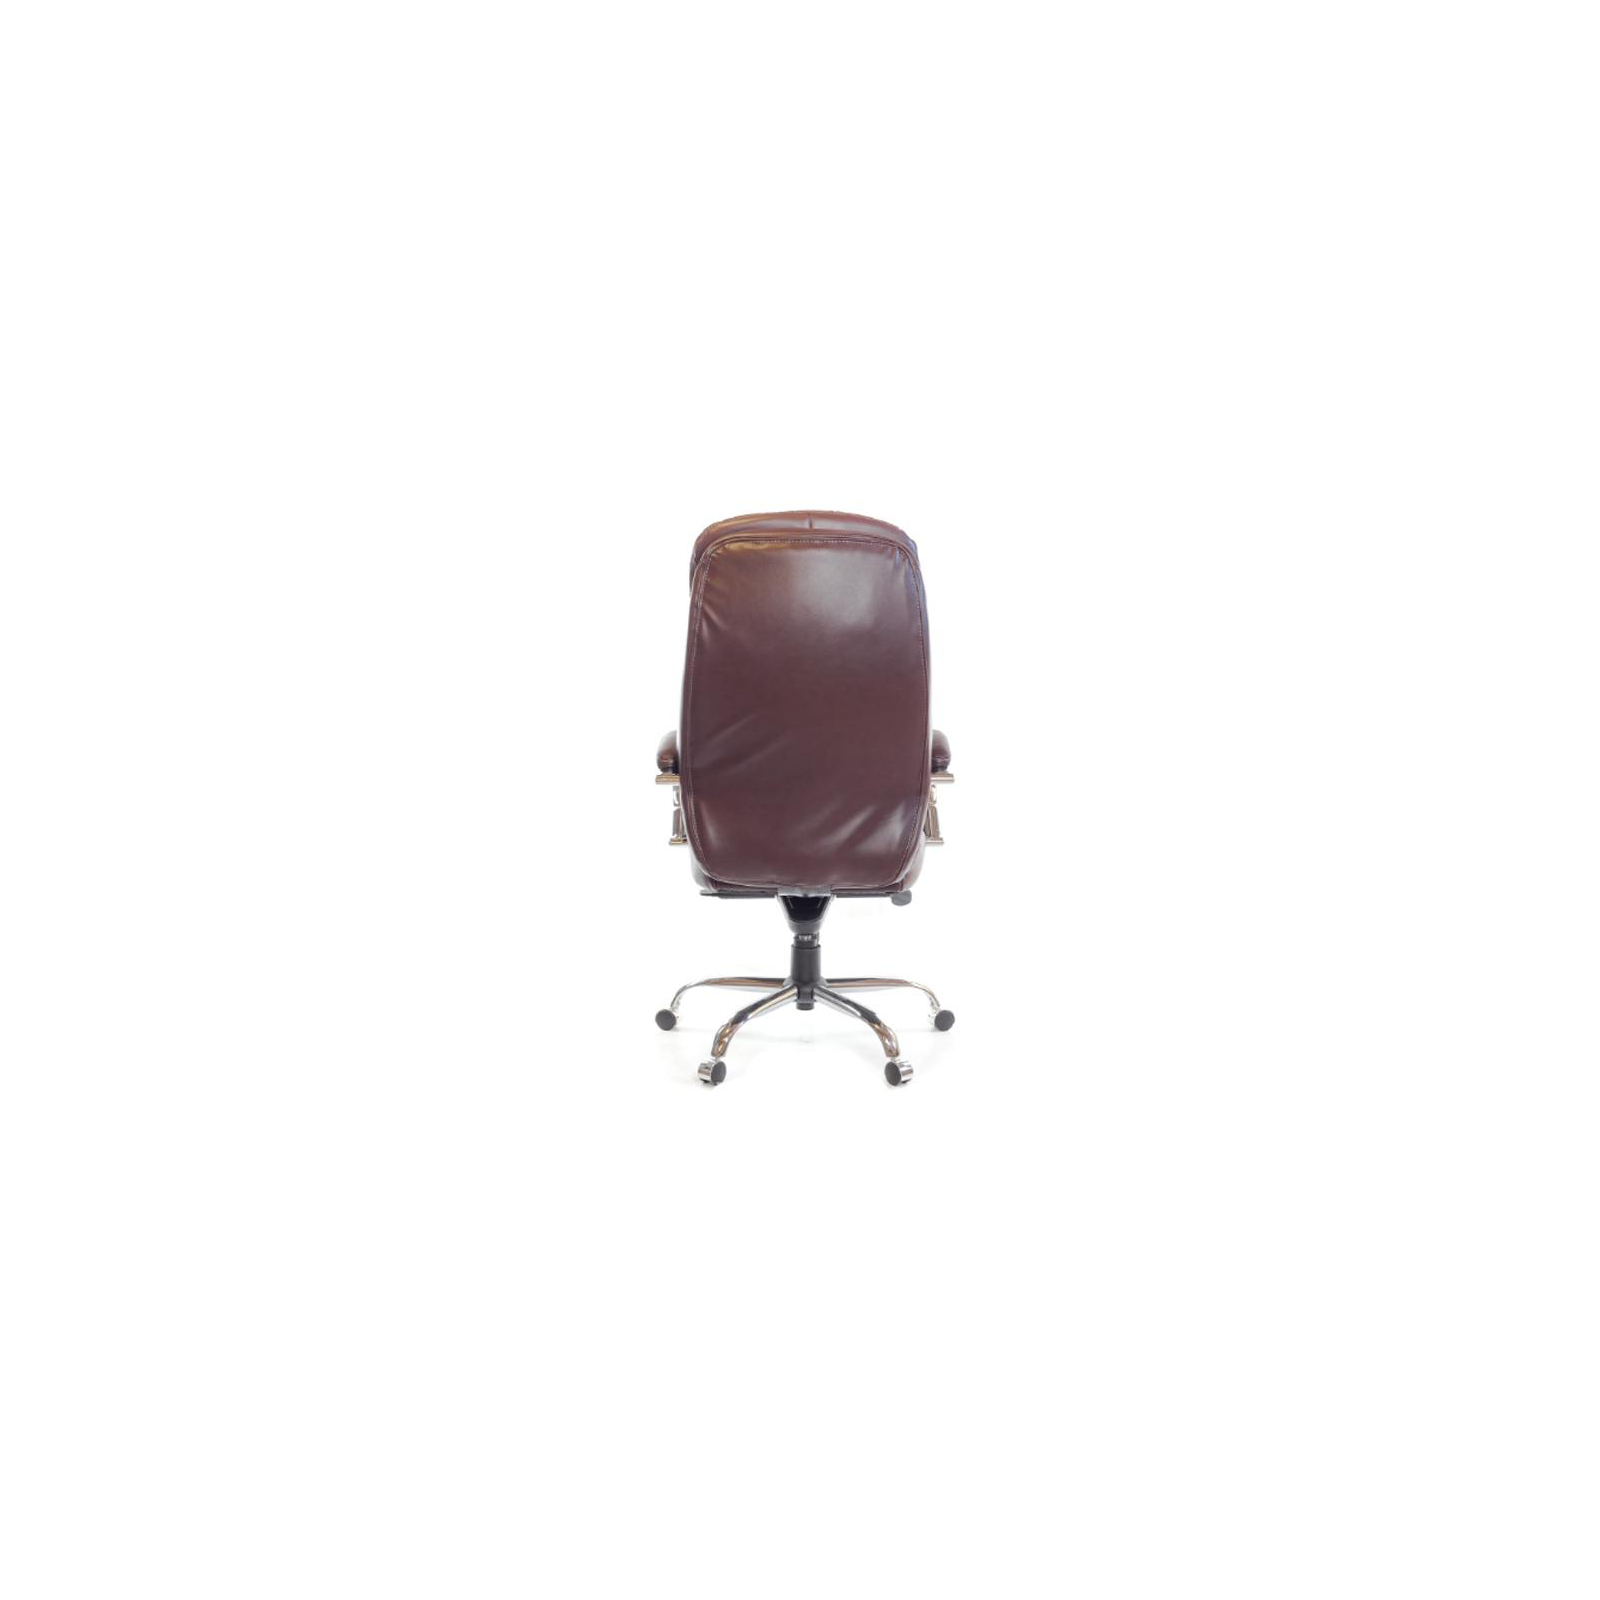 Офисное кресло Аклас Валенсия Soft CH MB Белое (07392) изображение 4